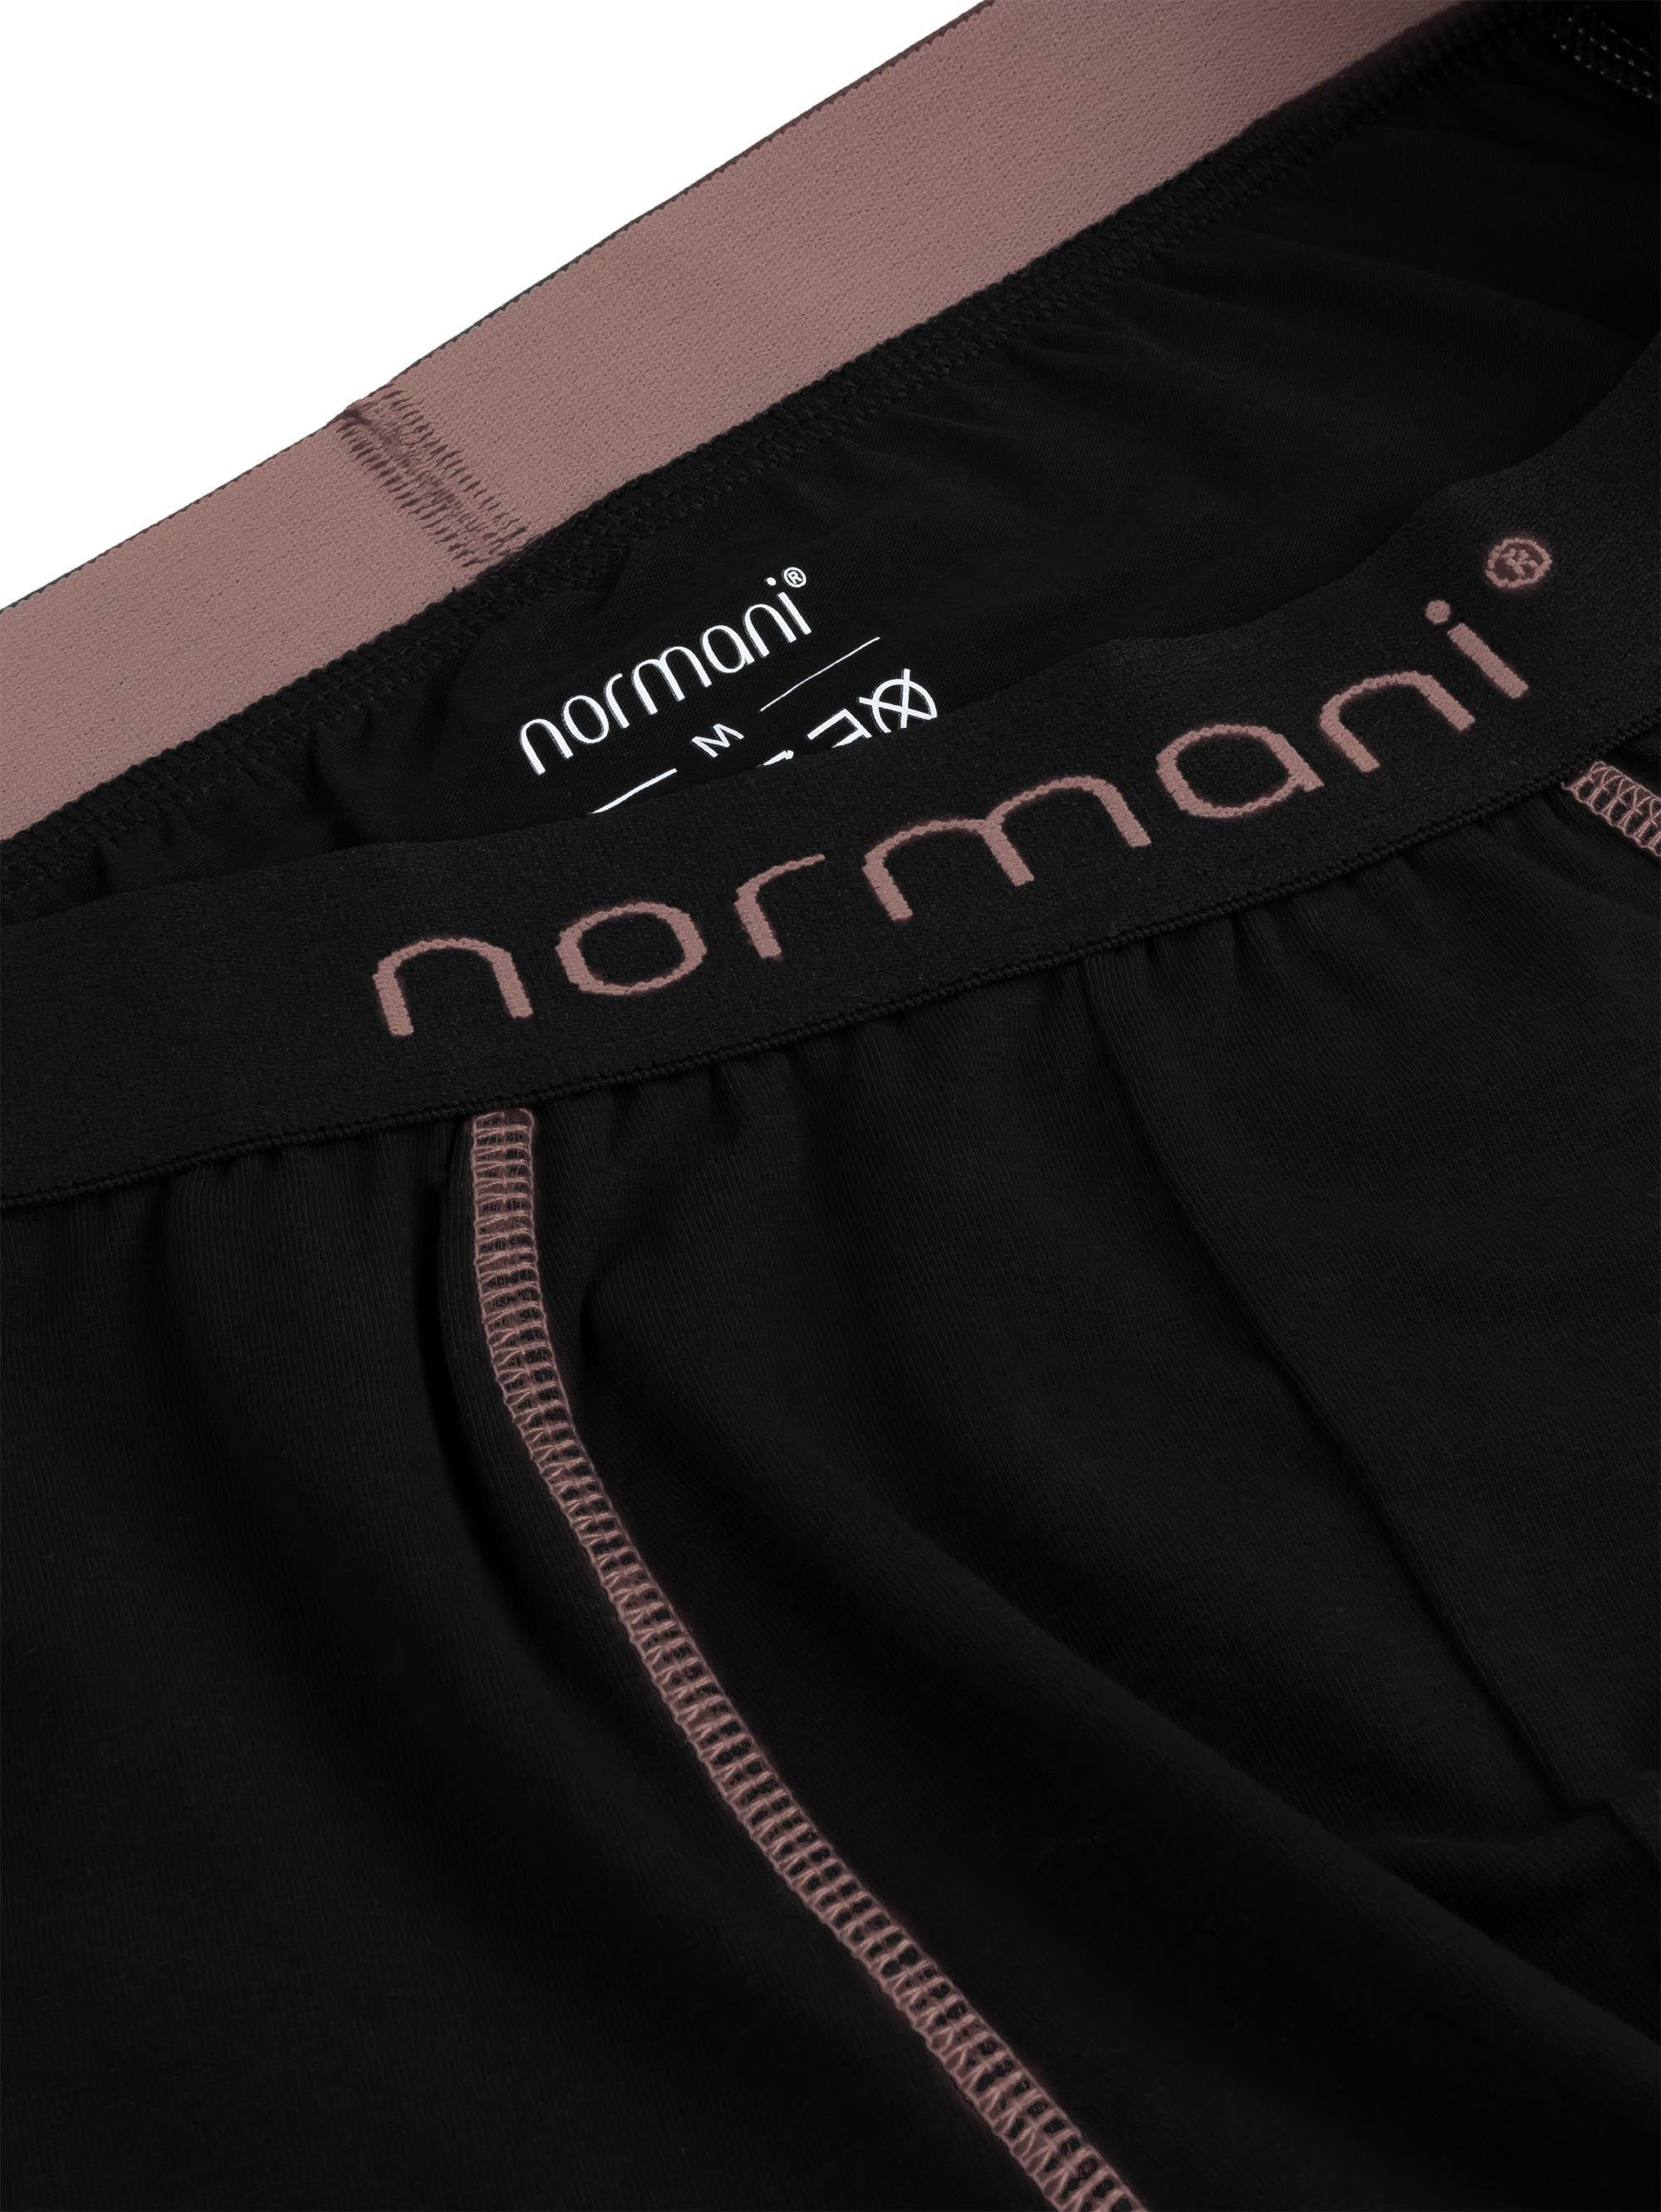 normani Boxershorts 12 x Unterhose Männer Herren atmungsaktiver für Baumwolle Lachs aus Baumwoll-Boxershorts